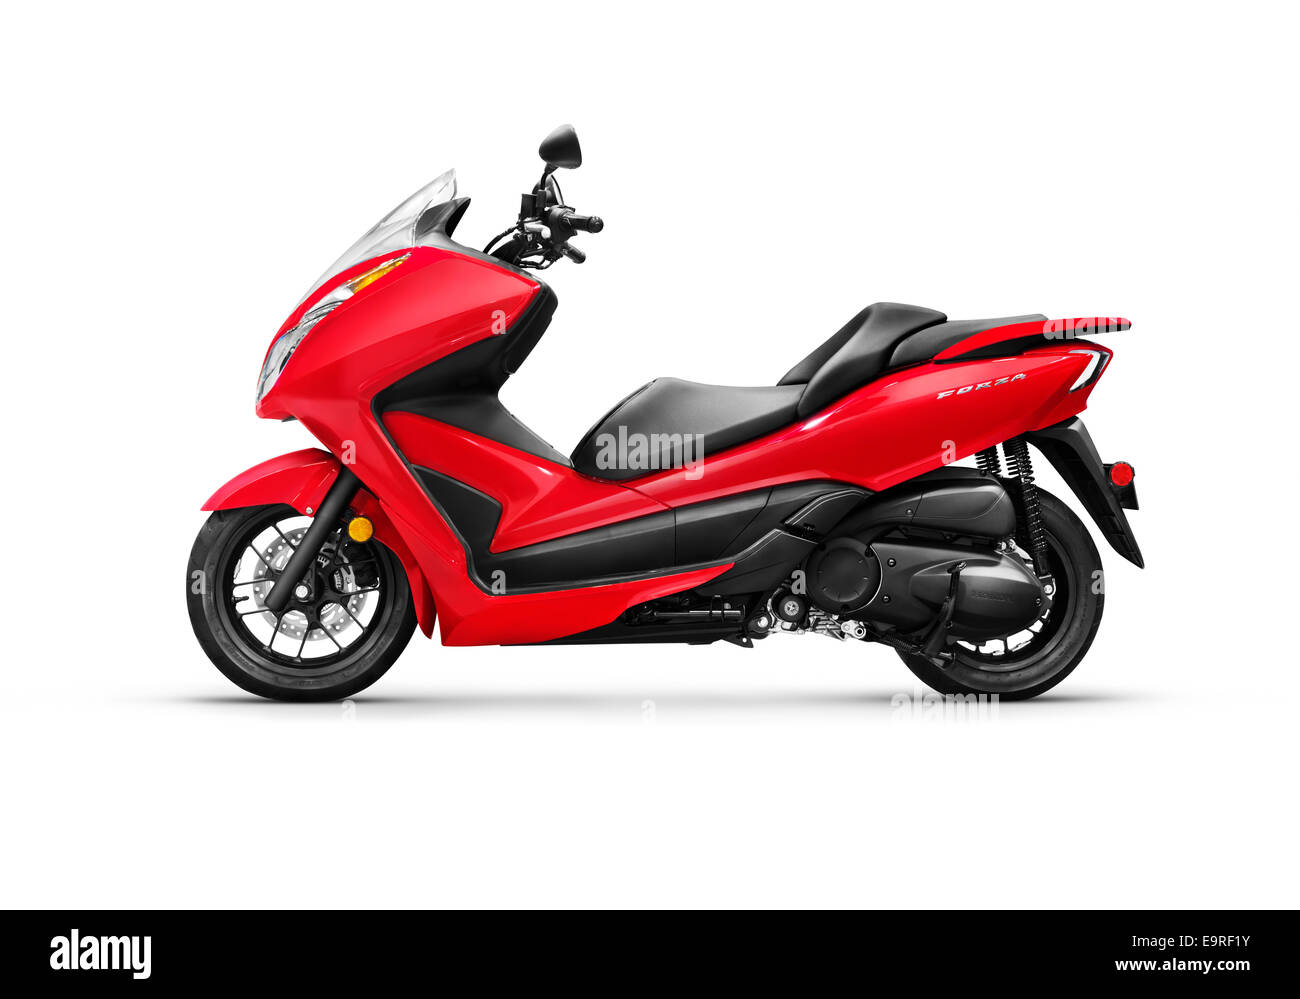 Führerschein erhältlich unter MaximImages.com – Roter 2014 Honda Forza ABS-Motorroller isoliert auf weißem Hintergrund mit Beschneidungspfad Stockfoto